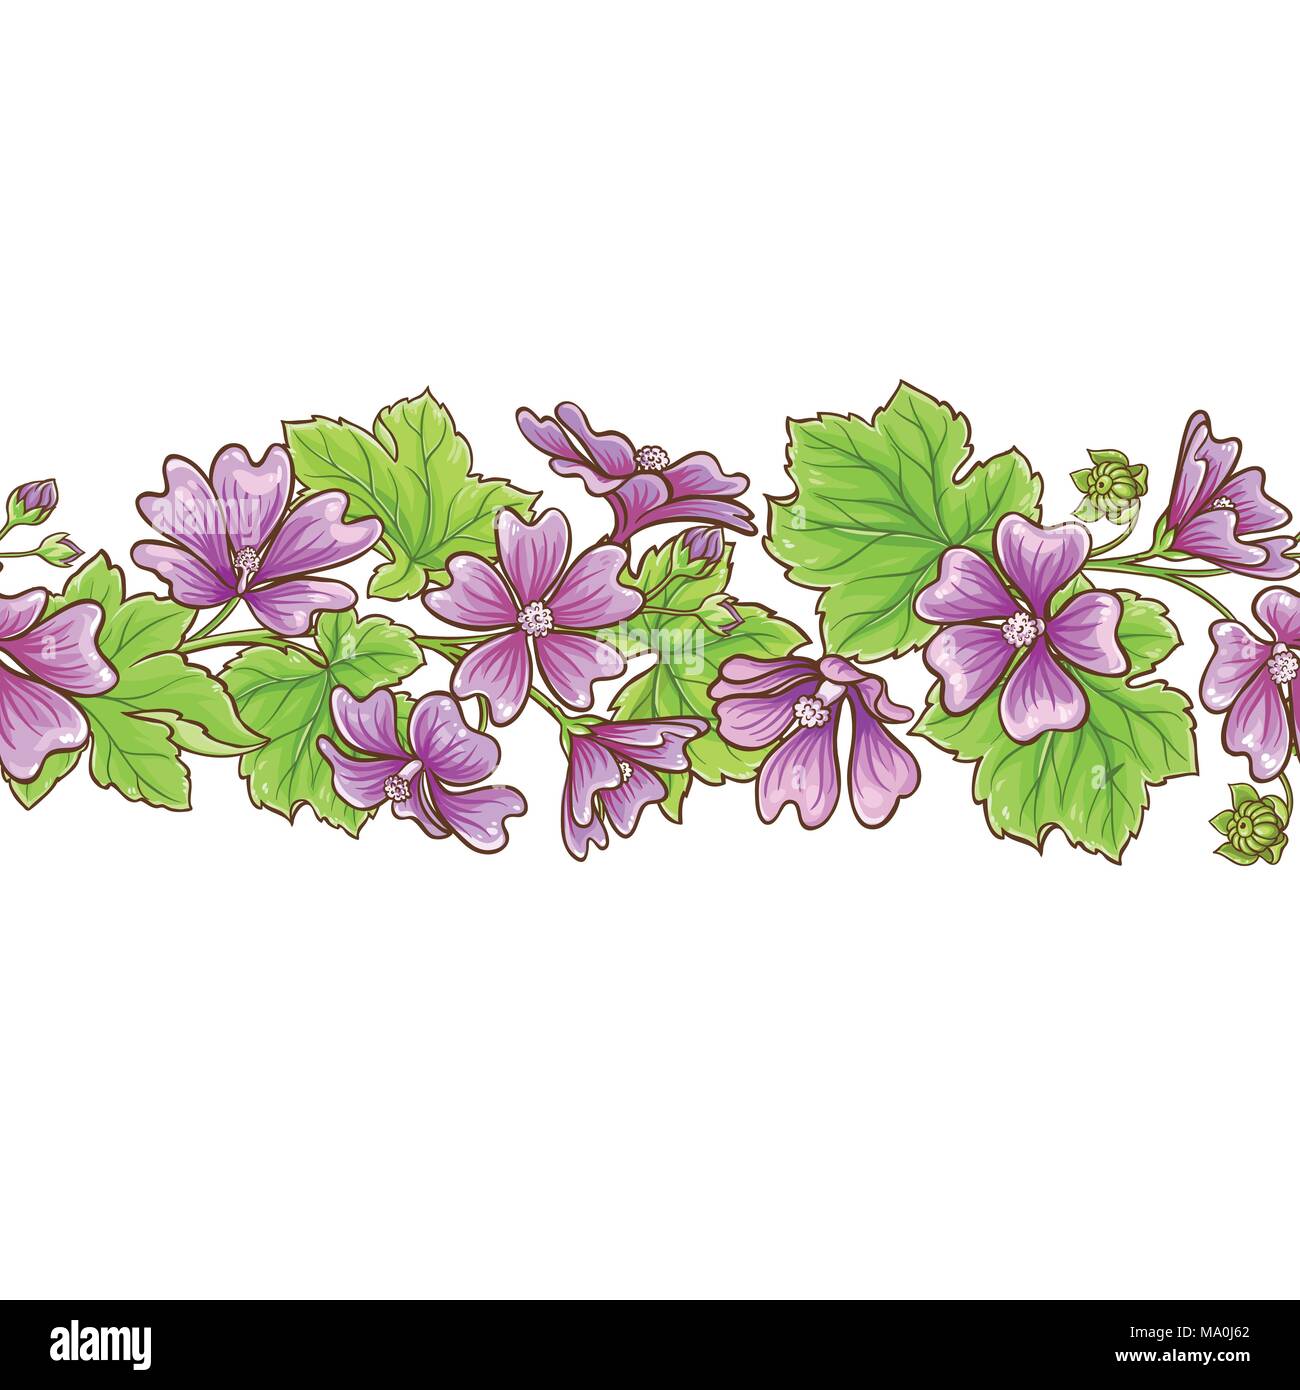 malva flowers vector frame on white background Stock Vector